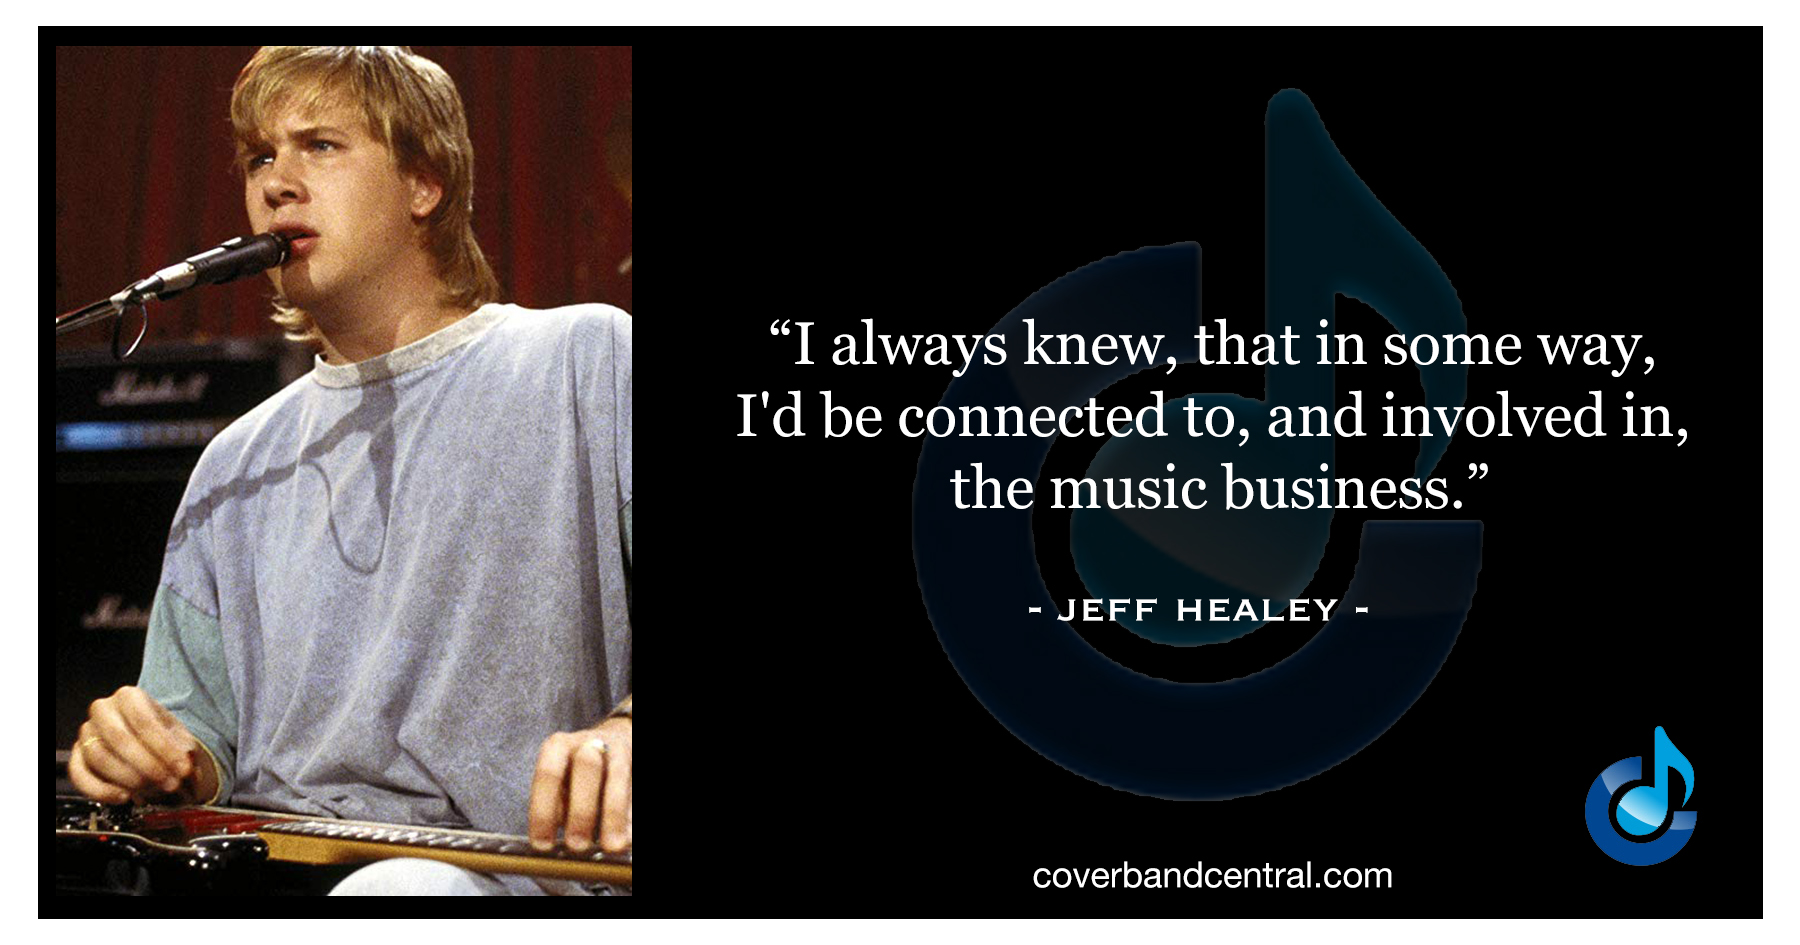 Jeff Healey quote